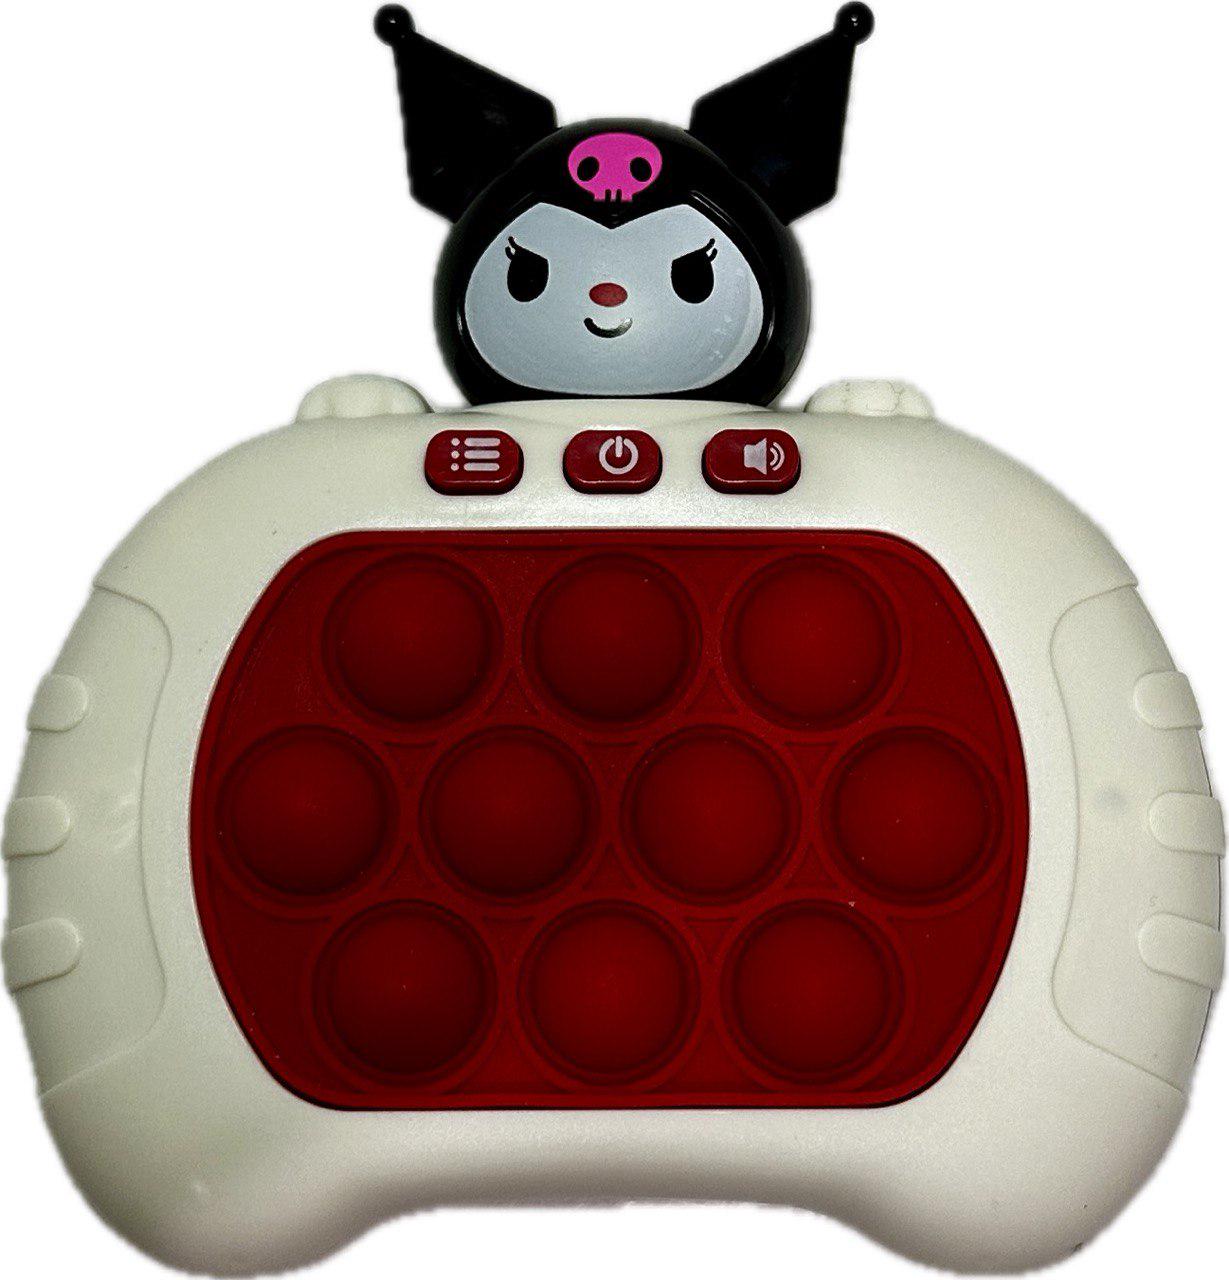 Іграшка електронна 696 Toys Quick Push Pop It 4 режими гри Червоний (QPPI9)